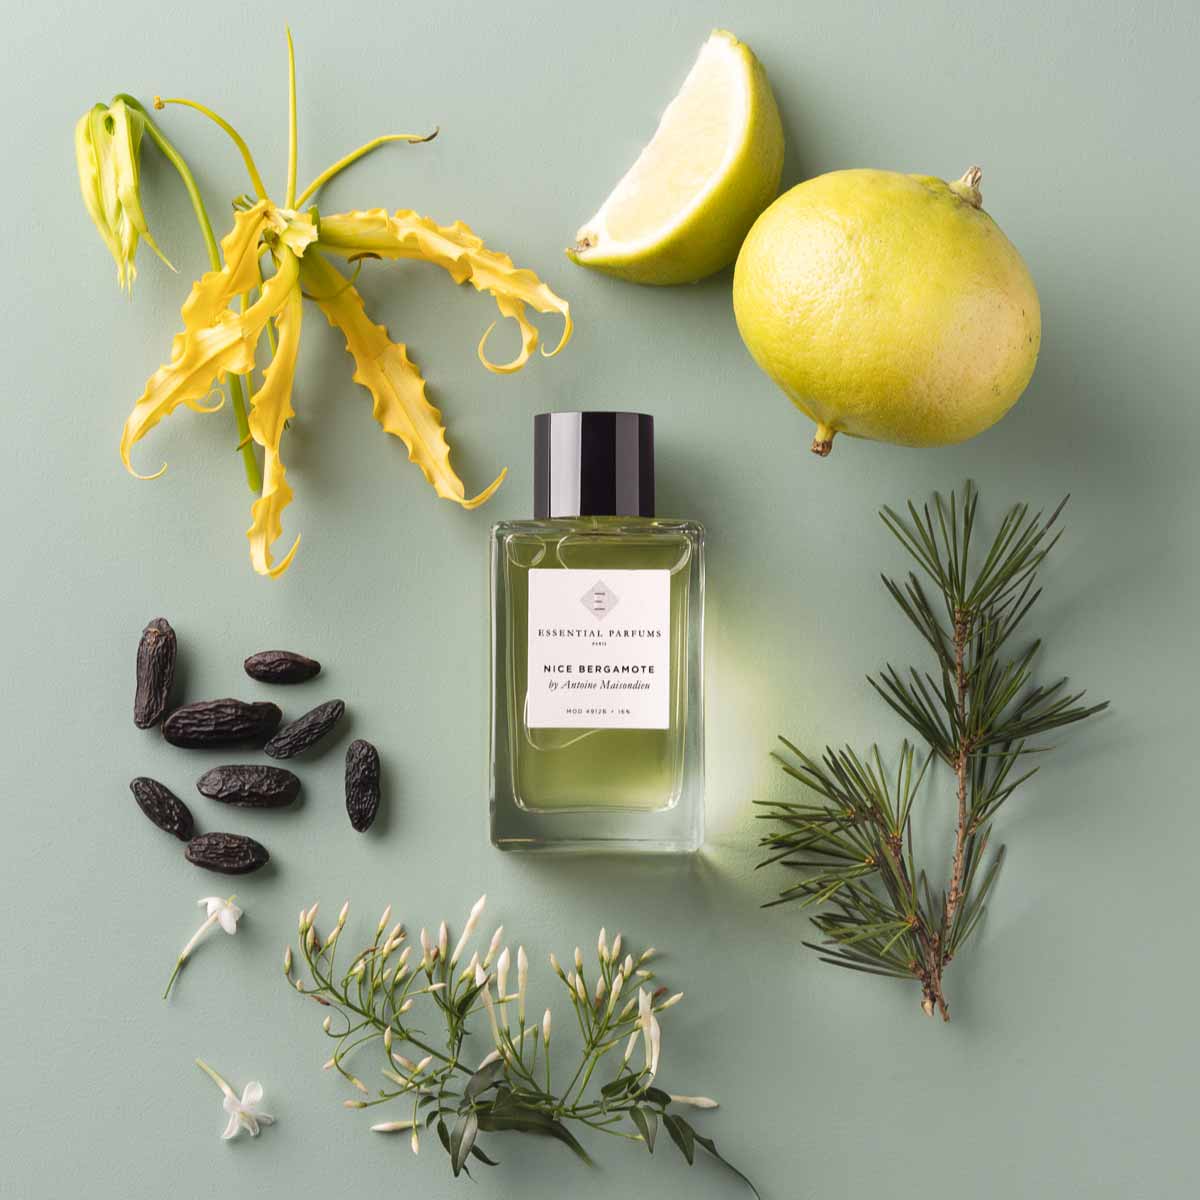 Perfume lámpara catalítica 1l Eclatante Bergamote - Essenza - Perfuma tu  día a día - Especialistas en aromas para tu hogar